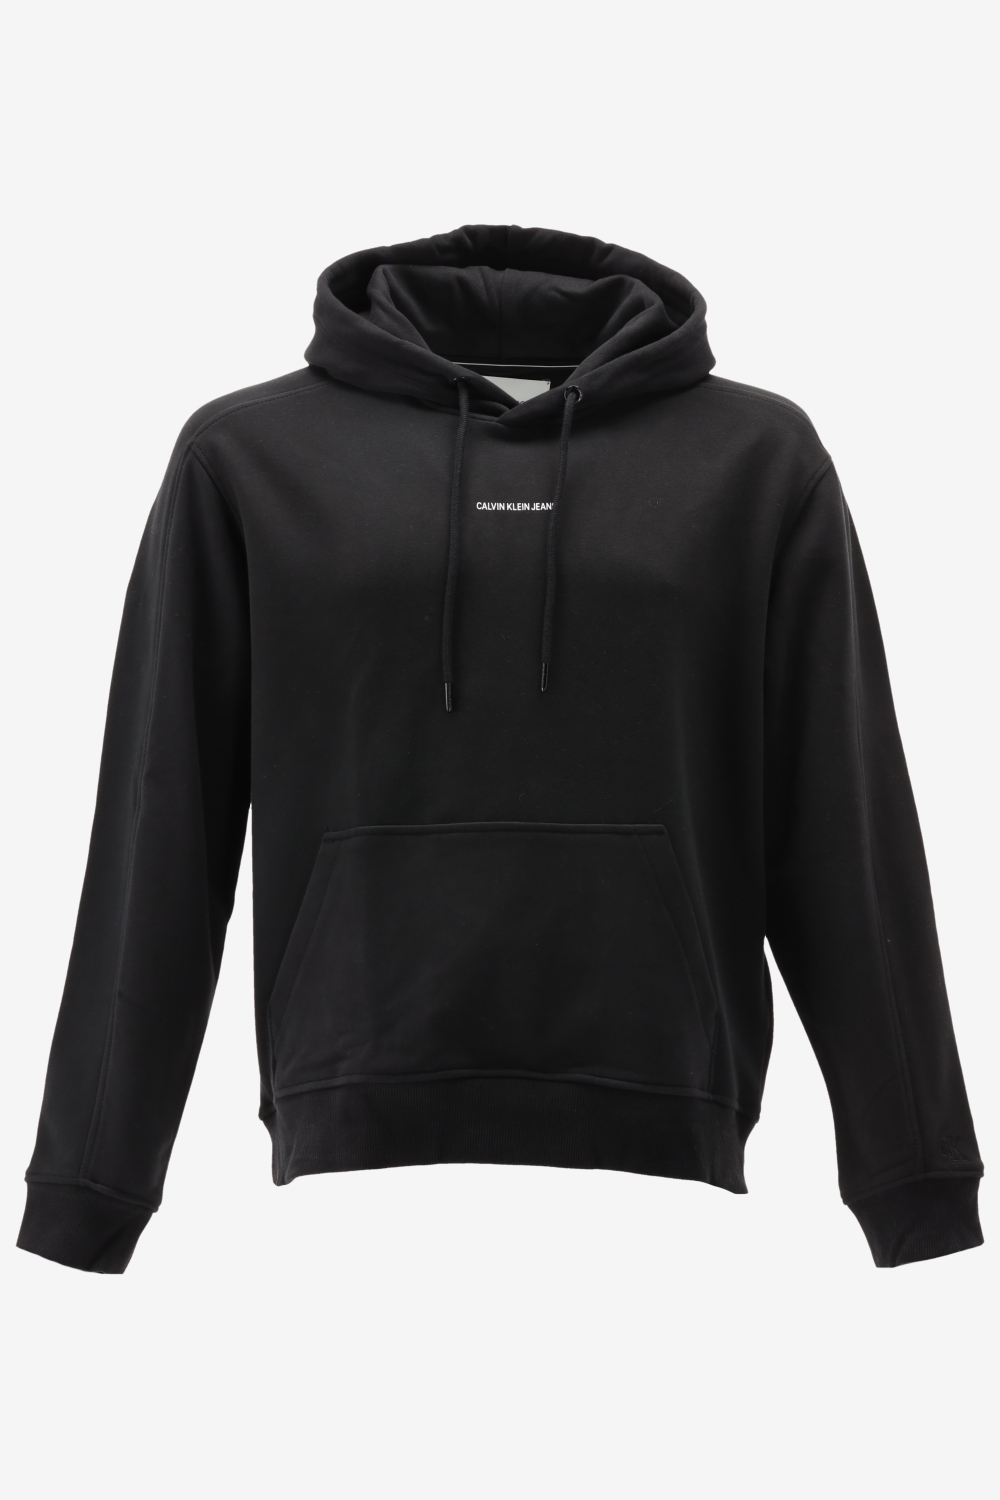 Calvin klein hoodie micro branding maat M